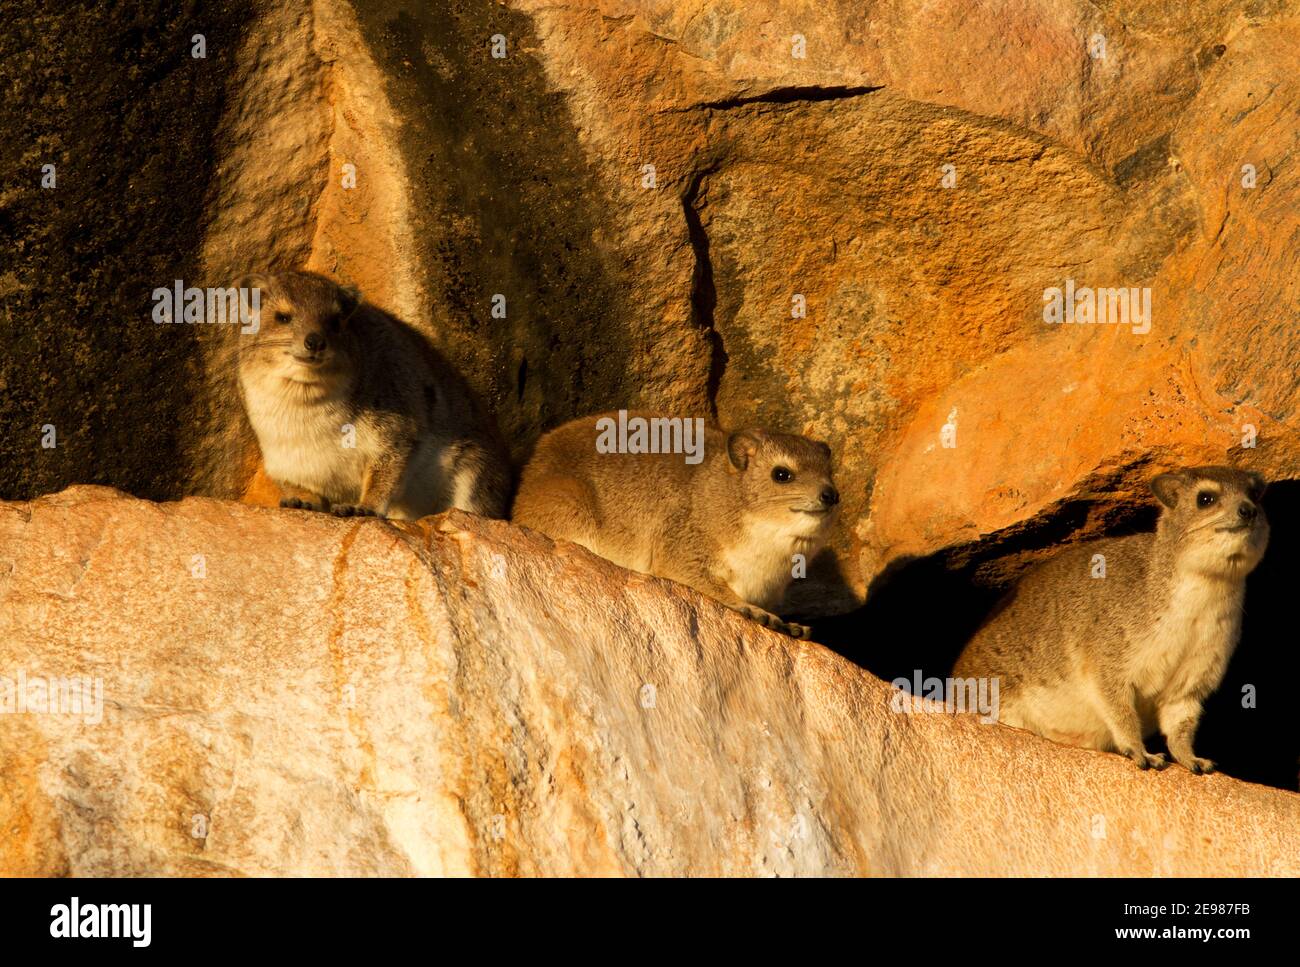 El Hyrax de manchas amarillas o Bush a menudo vive en áreas rocosas junto con su pariente cercano, el Hyrax de Roca. Se asemejan entre sí Foto de stock